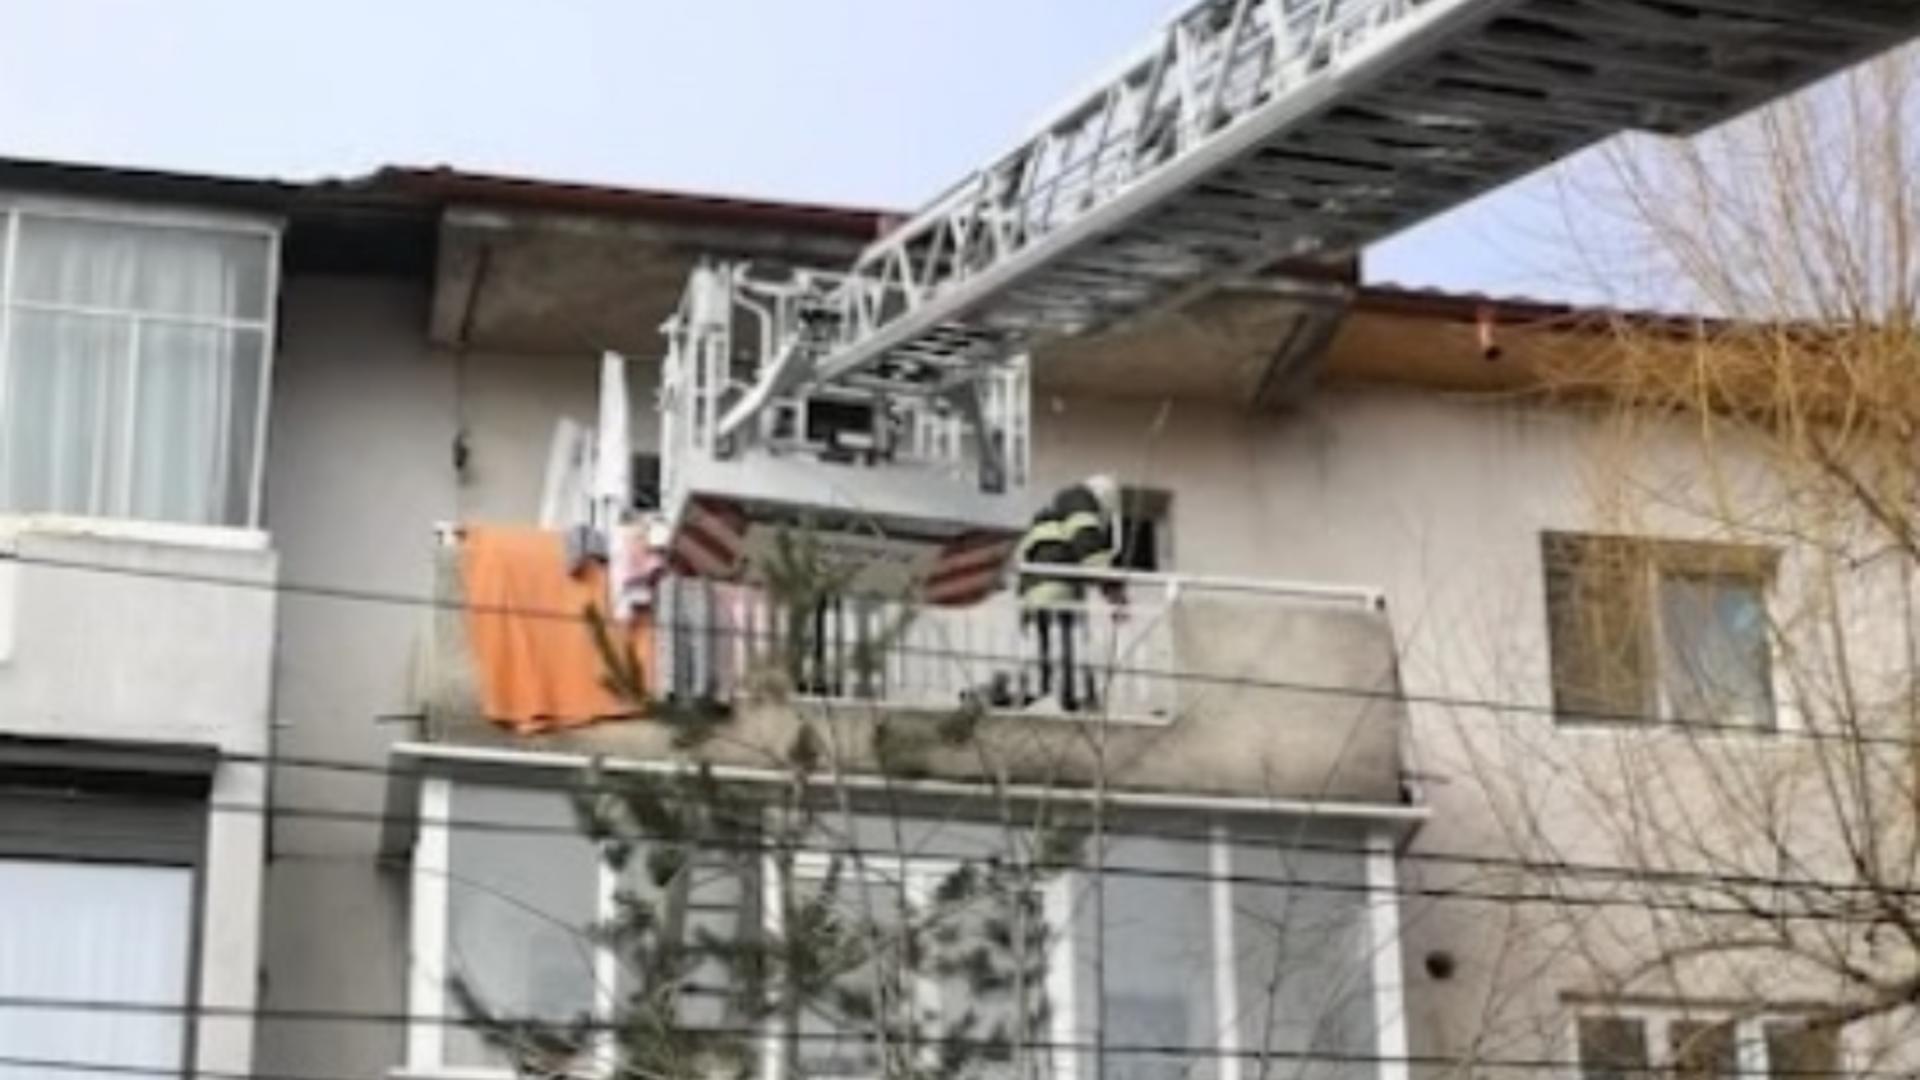 Micuțul și-a închis bunica pe balcon și nu a cedat rugăminților acesteia de a debloca ușa - VIDEO